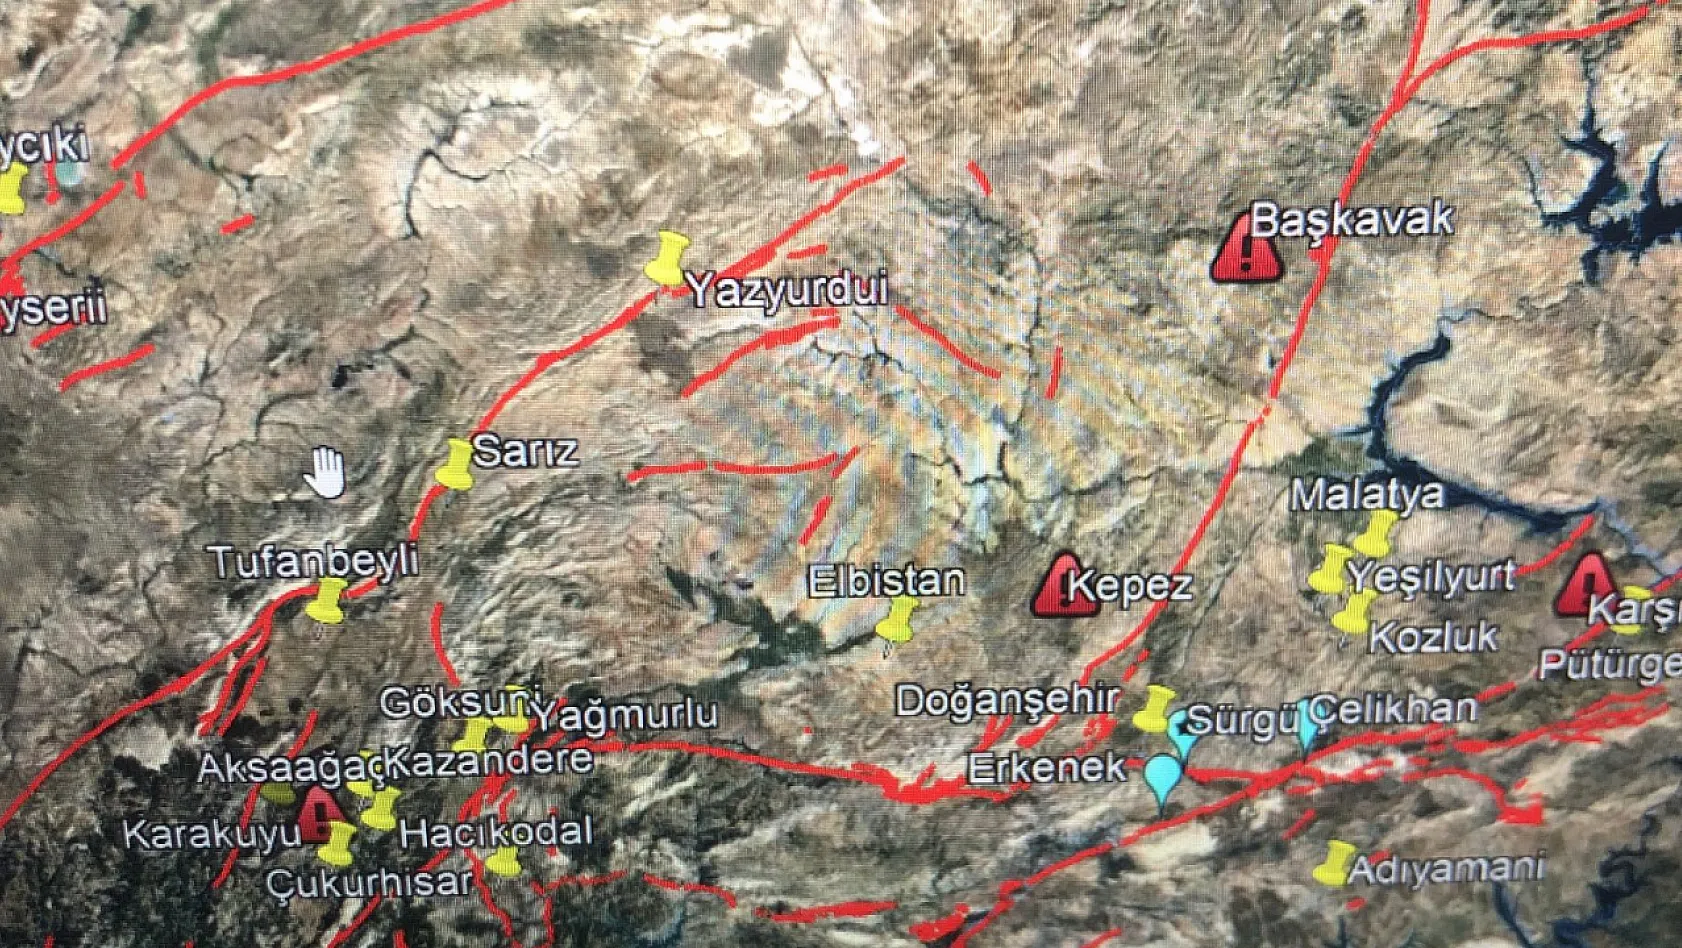 Ünlü Deprem Uzmanından Sivas Depremi açıklaması: Kayseri üzerinden....